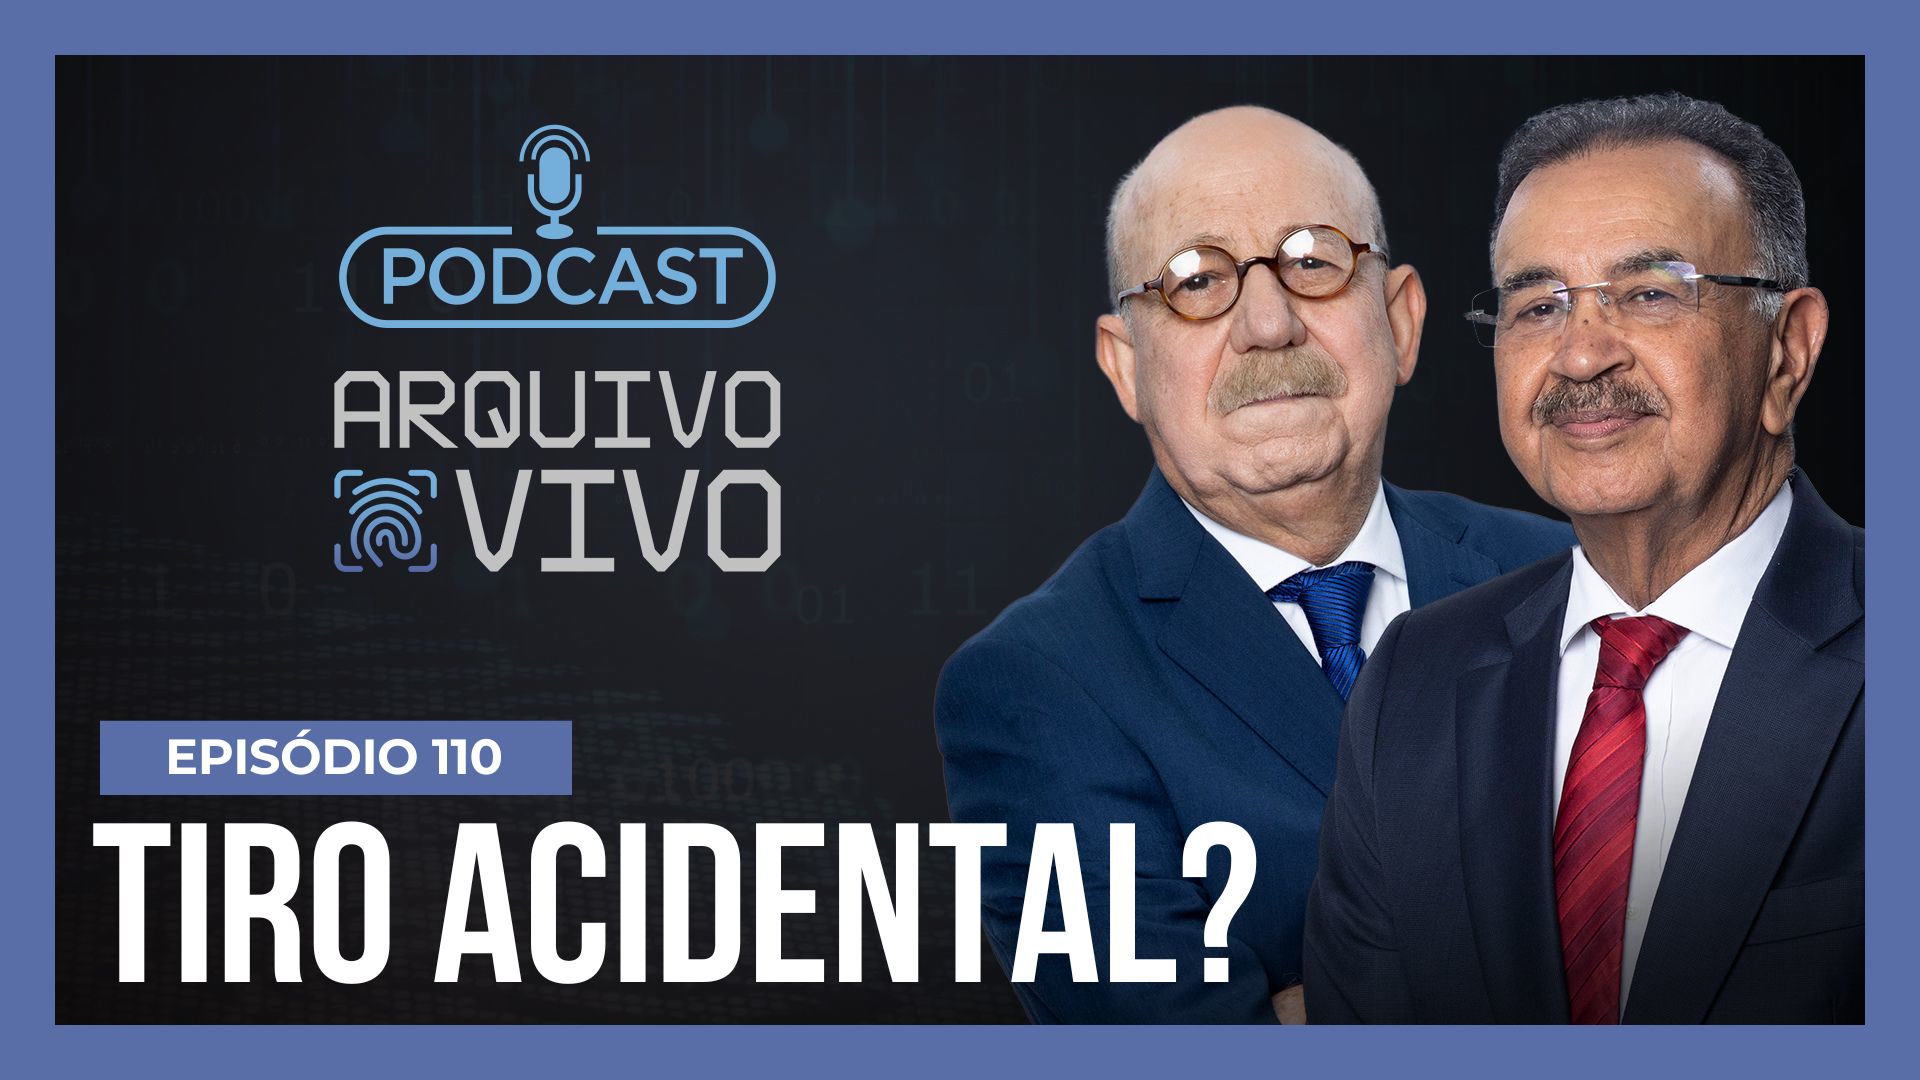 Vídeo: Podcast Arquivo Vivo: Morte de adolescente por amiga em Cuiabá levanta discussão sobre porte de arma | Ep. 110